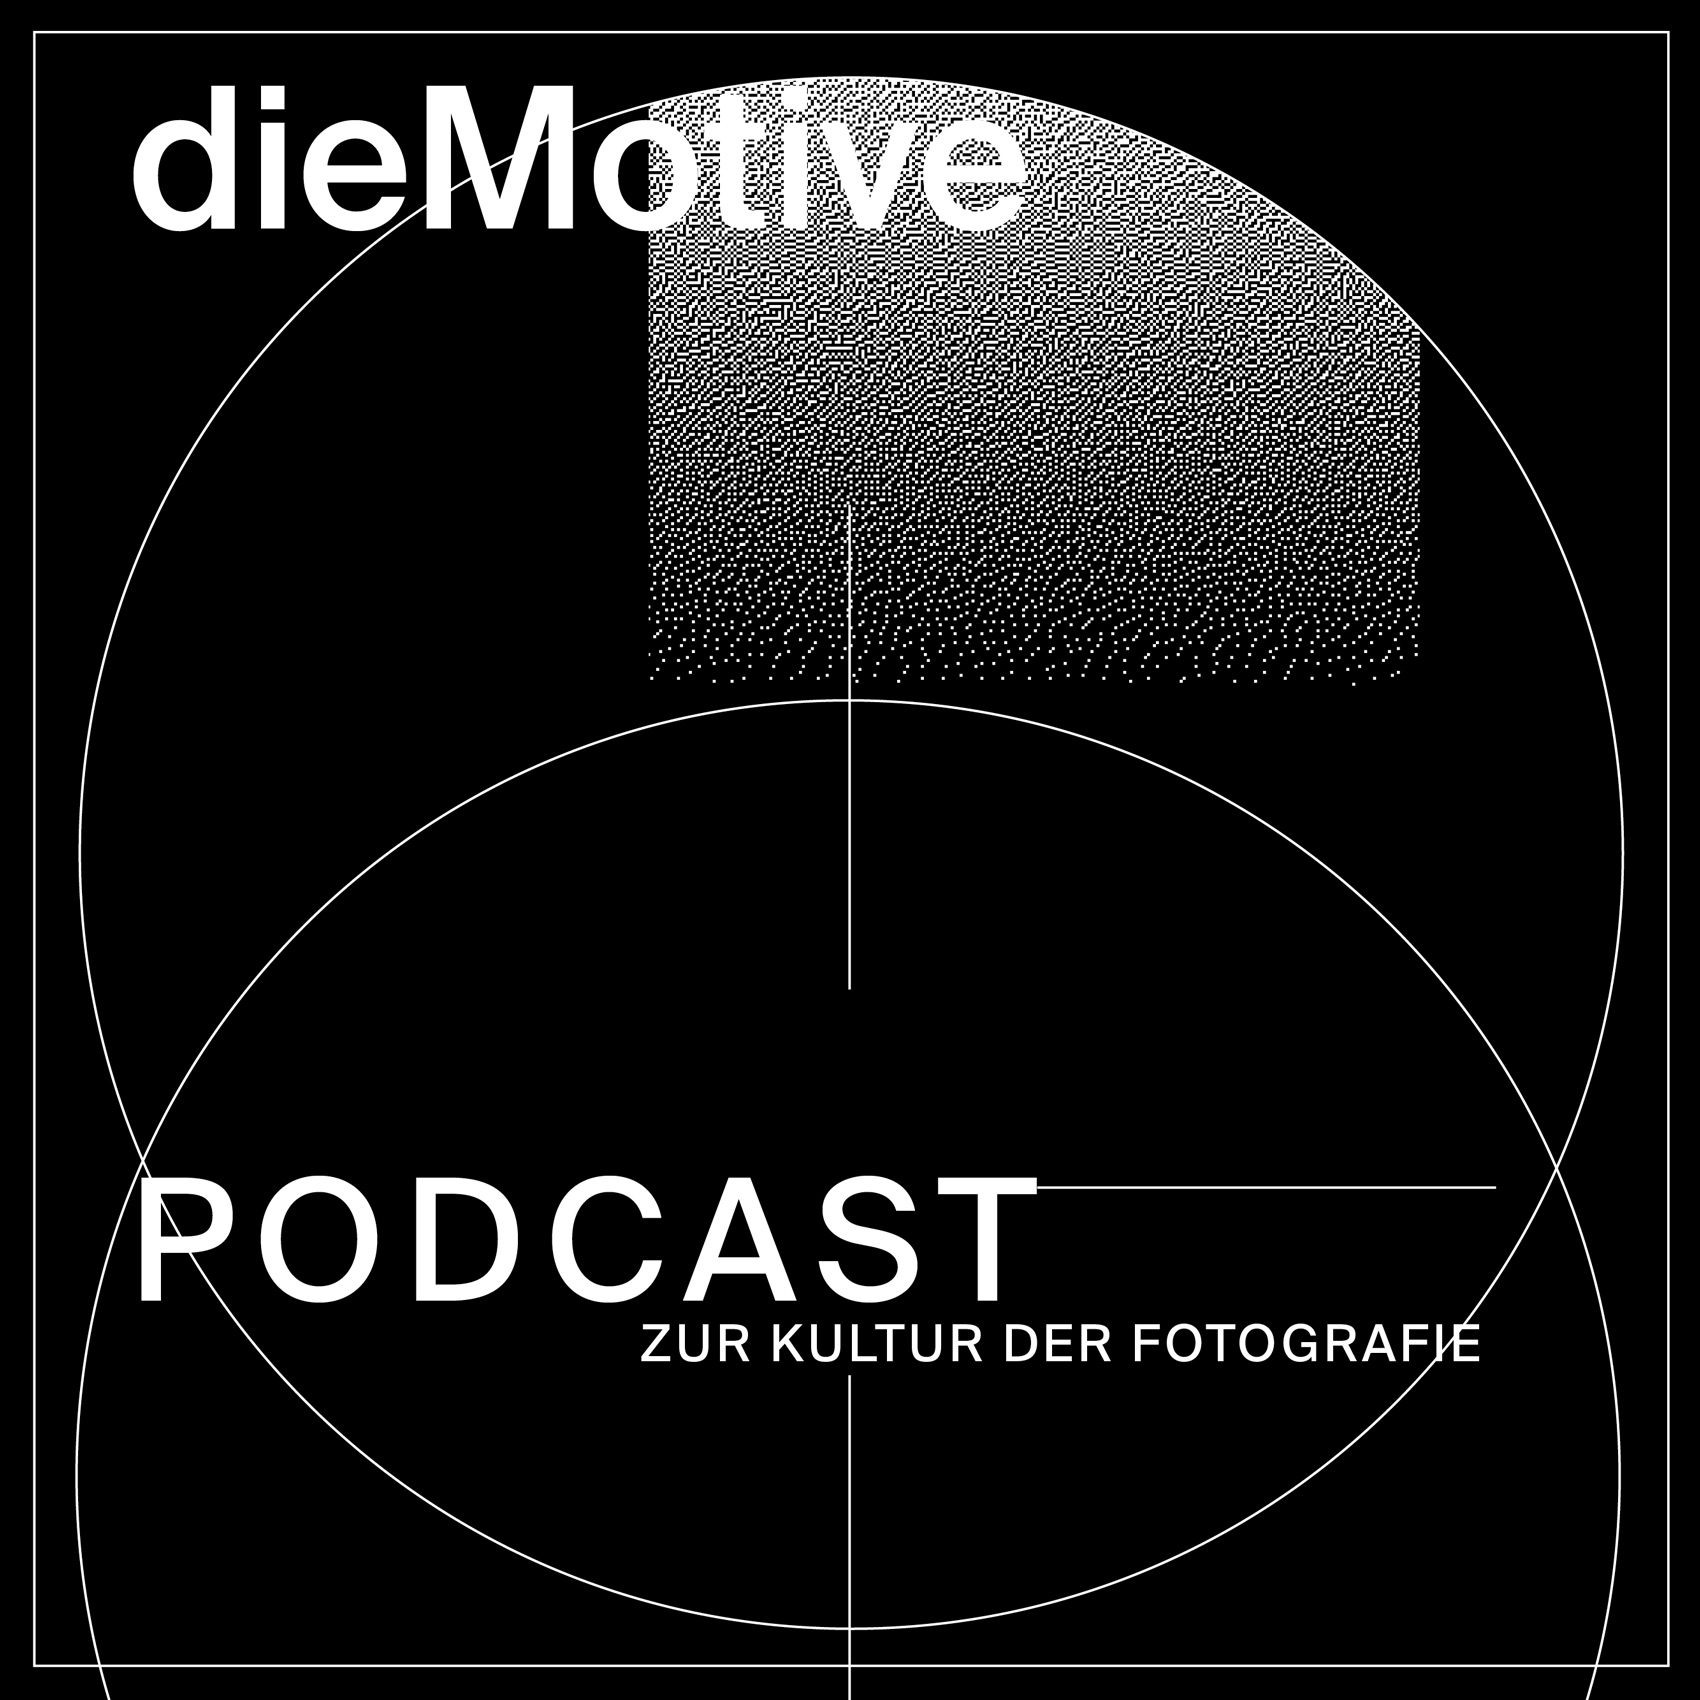 dieMotive – Podcast zur Kultur der Fotografie